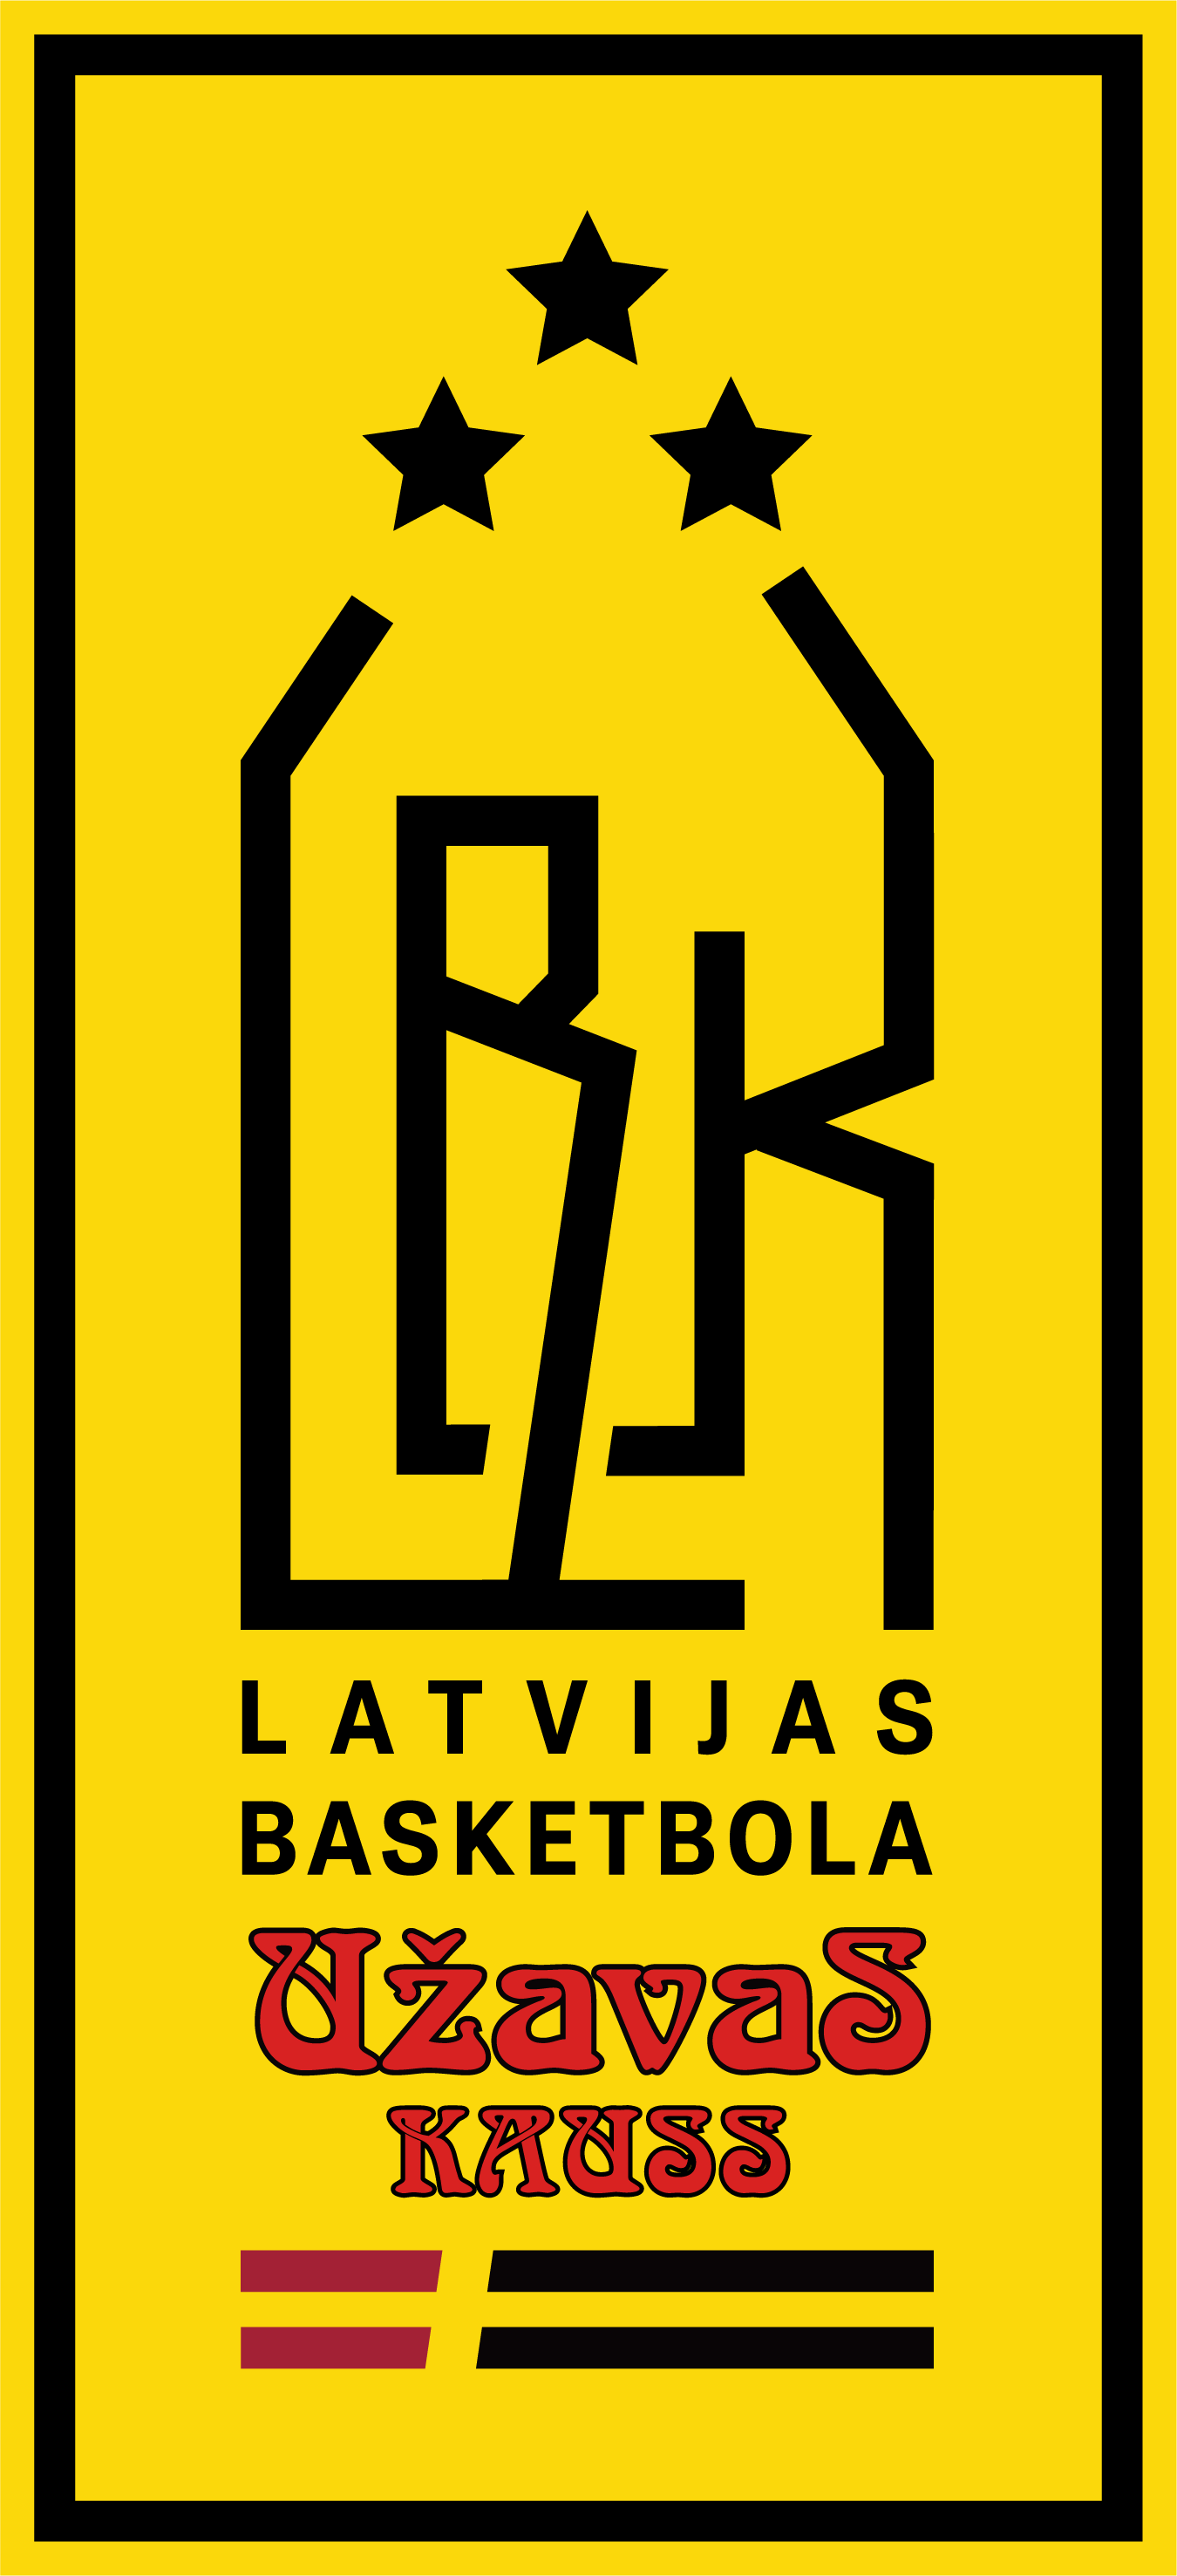 Līdz 1. augustam var pieteikties Latvijas basketbola Užavas kausa izcīņai